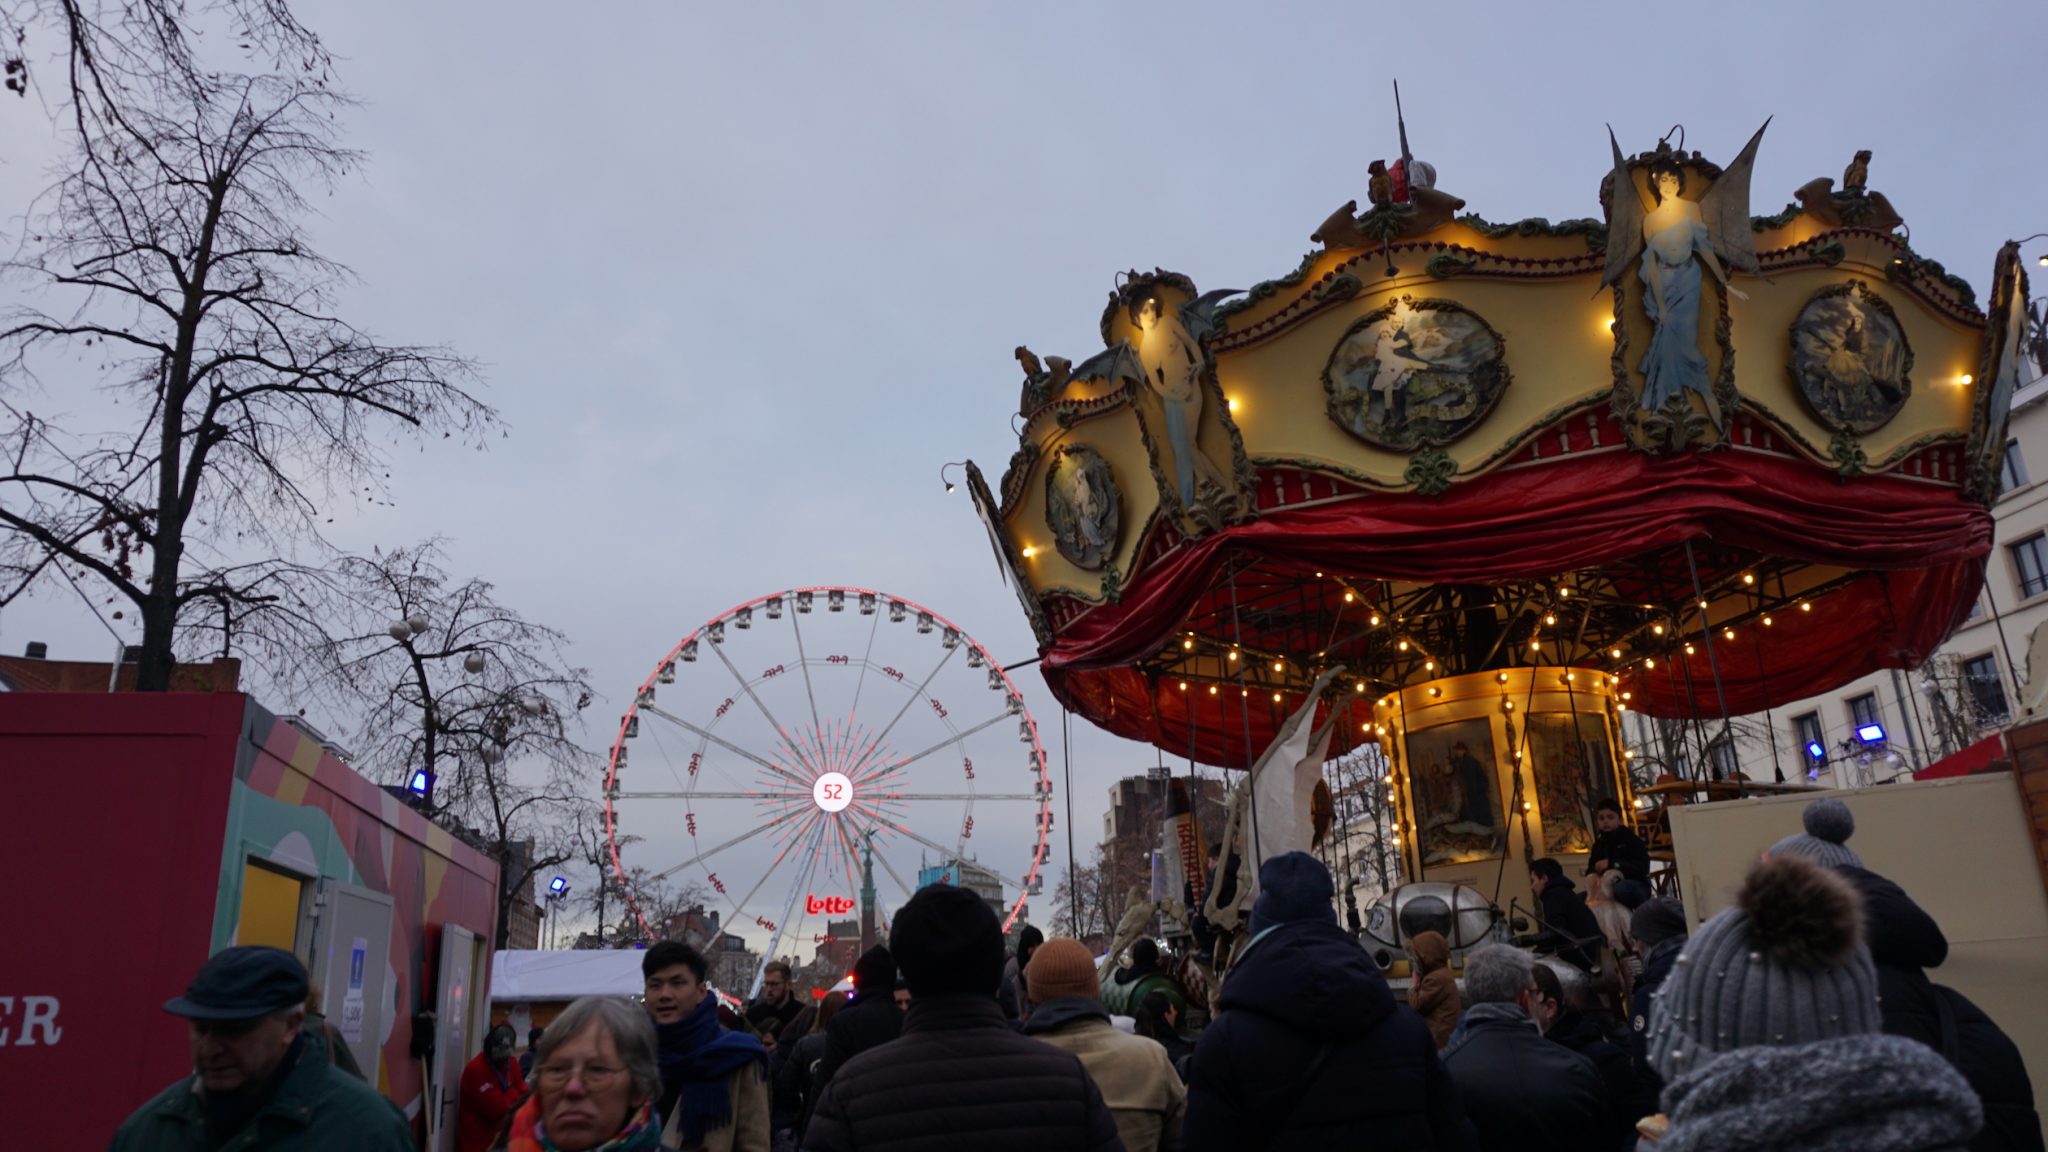 Roteiro Bruxelas Itinerário Guia Dicas Mercados de Natal